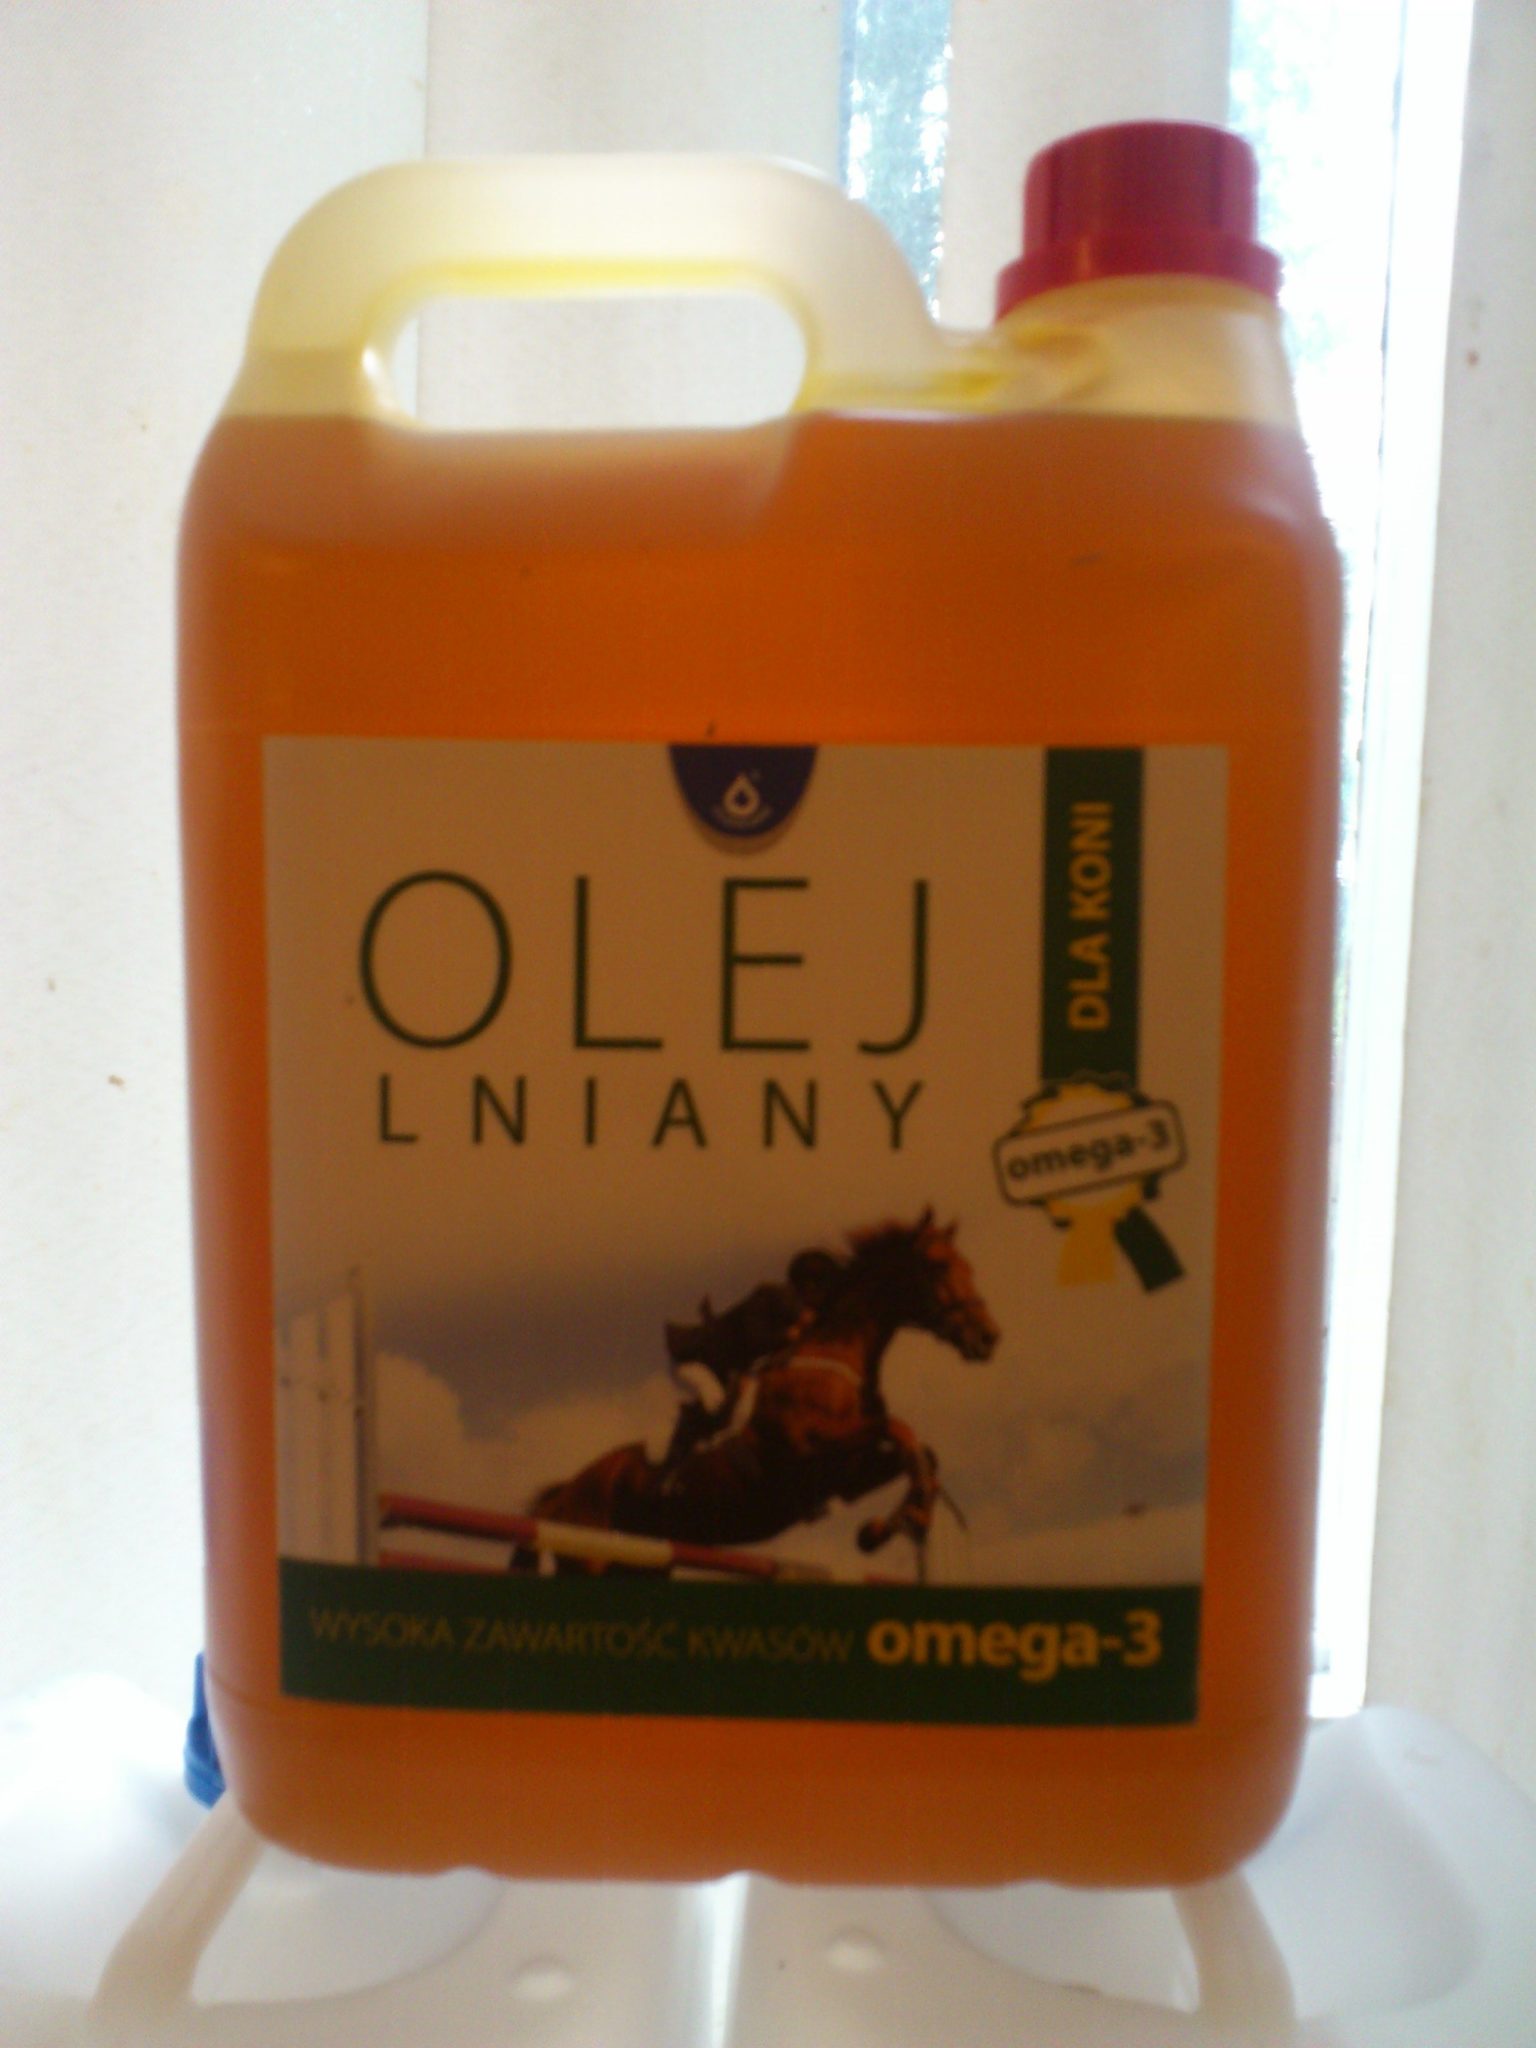 tanio-olej-lniany-dla-koni-5000-ml-wetfarma